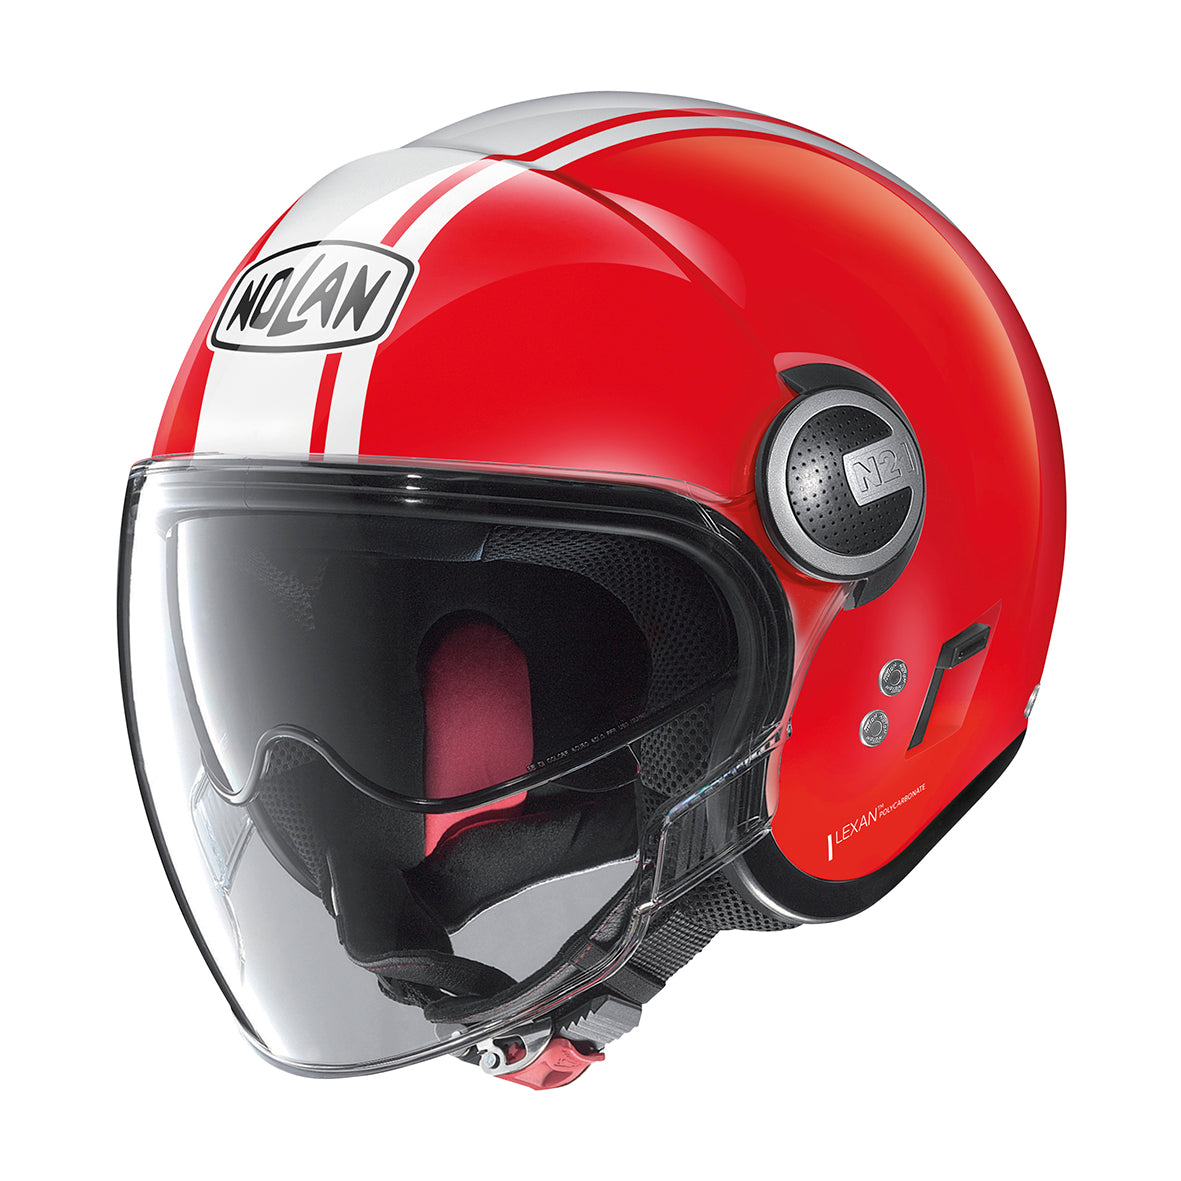 Nolan N21 Visor Dolce Vita 96 Corsa Red Helmet